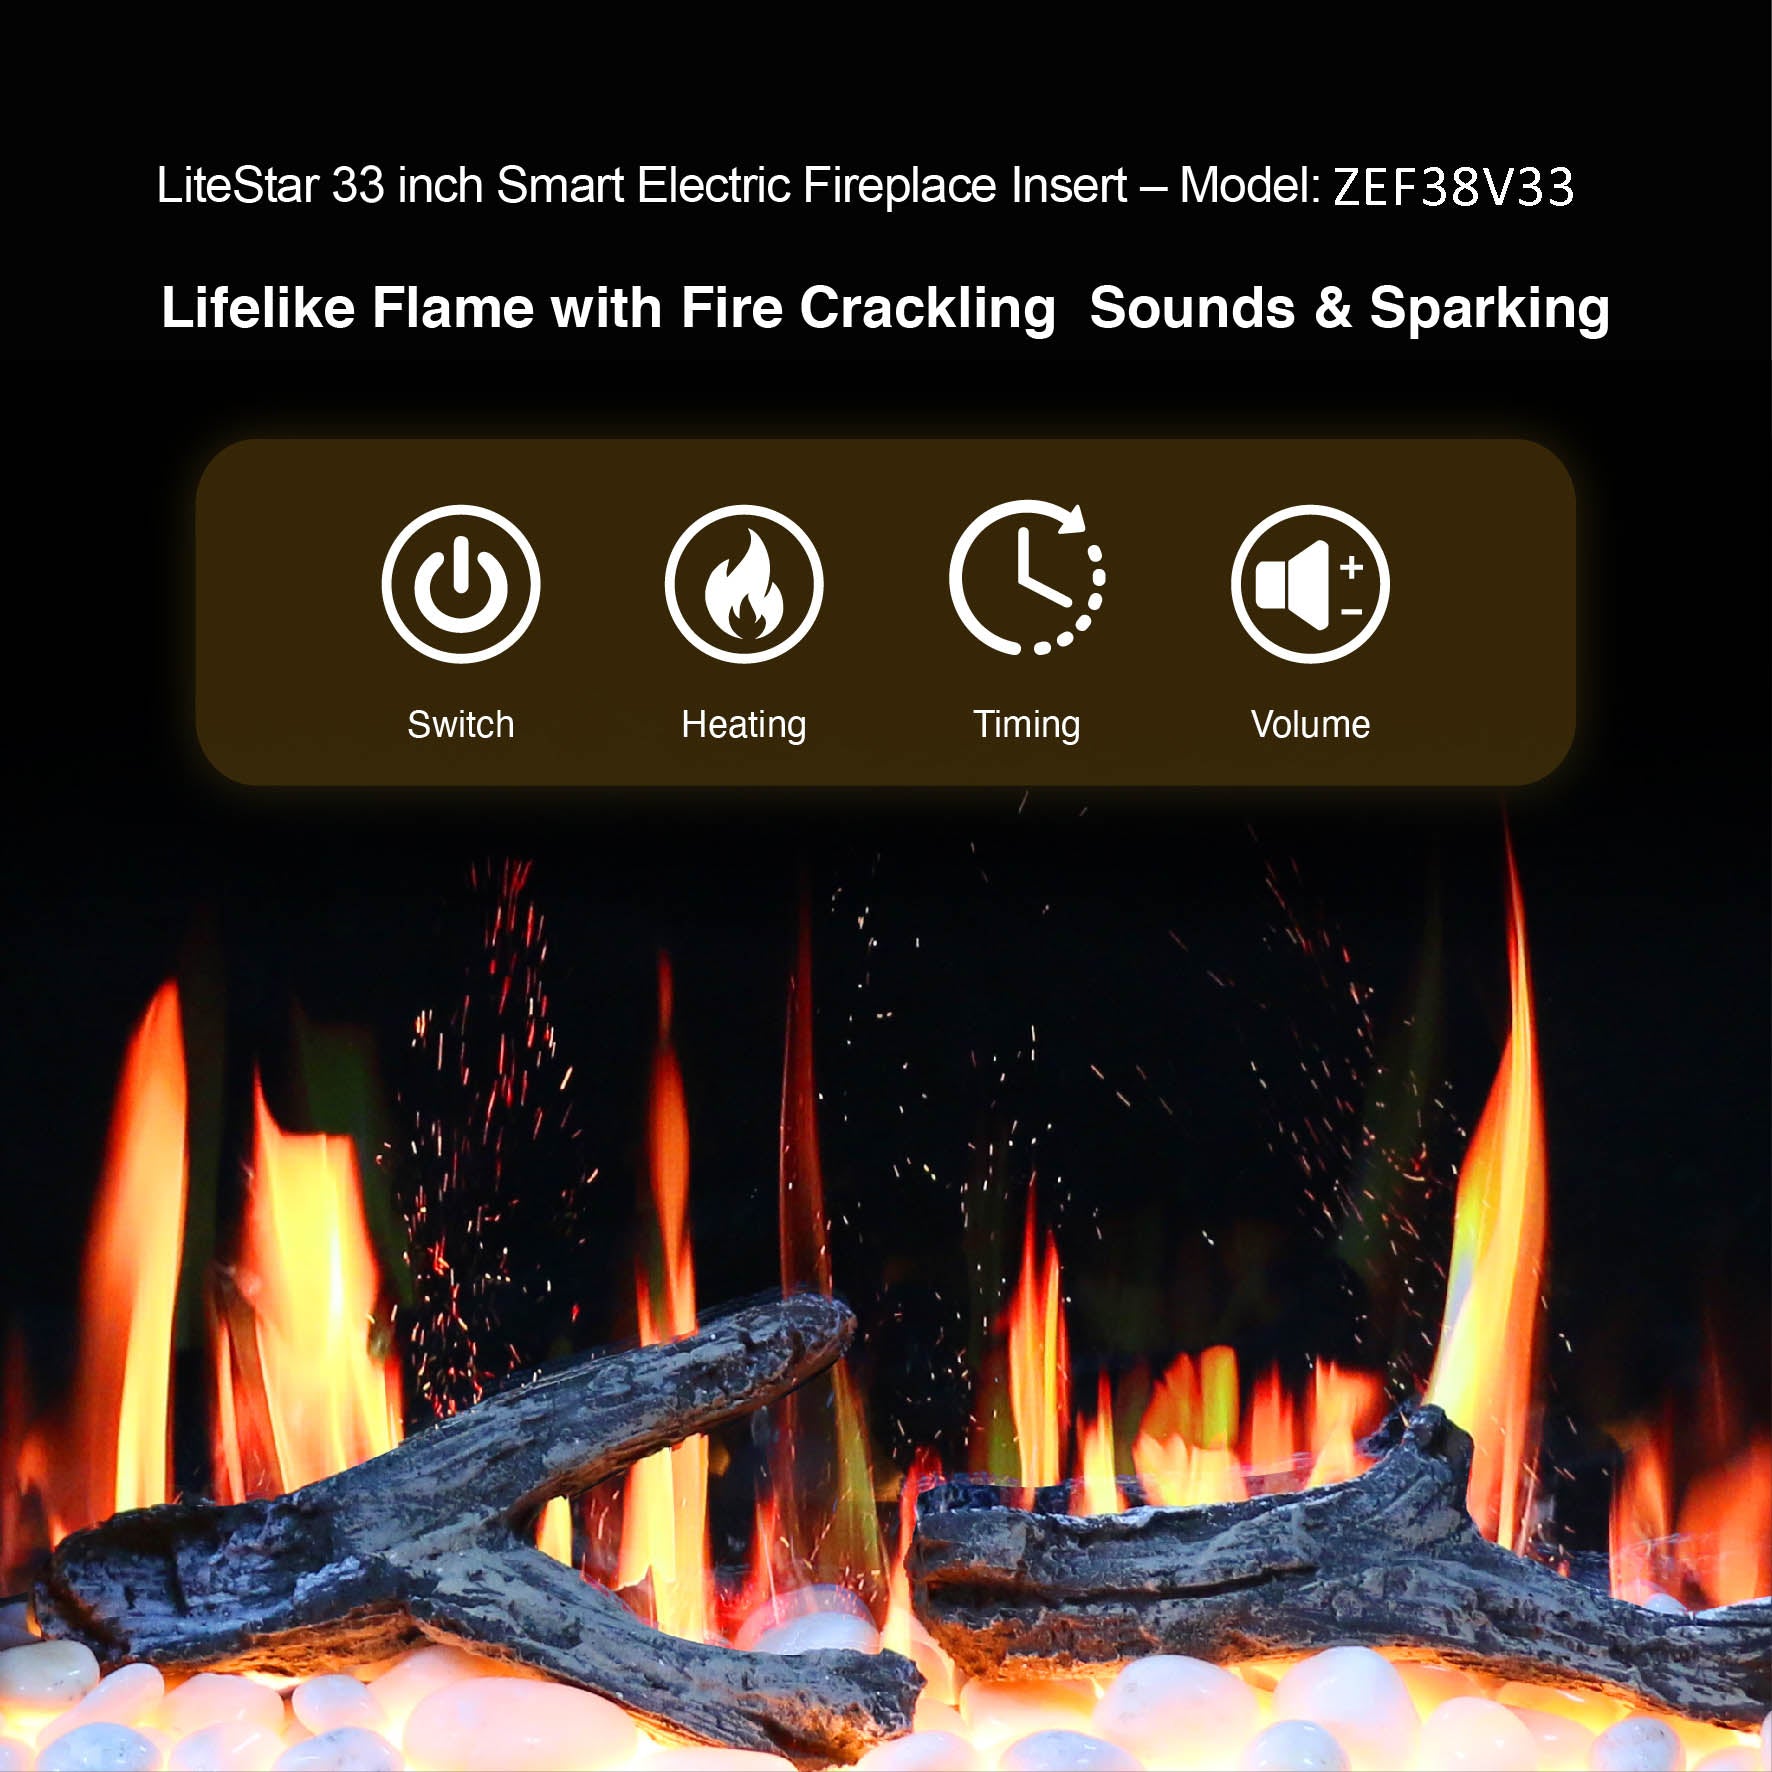 Litedeer LiteStar 33 inch Smart Electric Fireplace Inserts-ZEF38VC33-Heat Settings